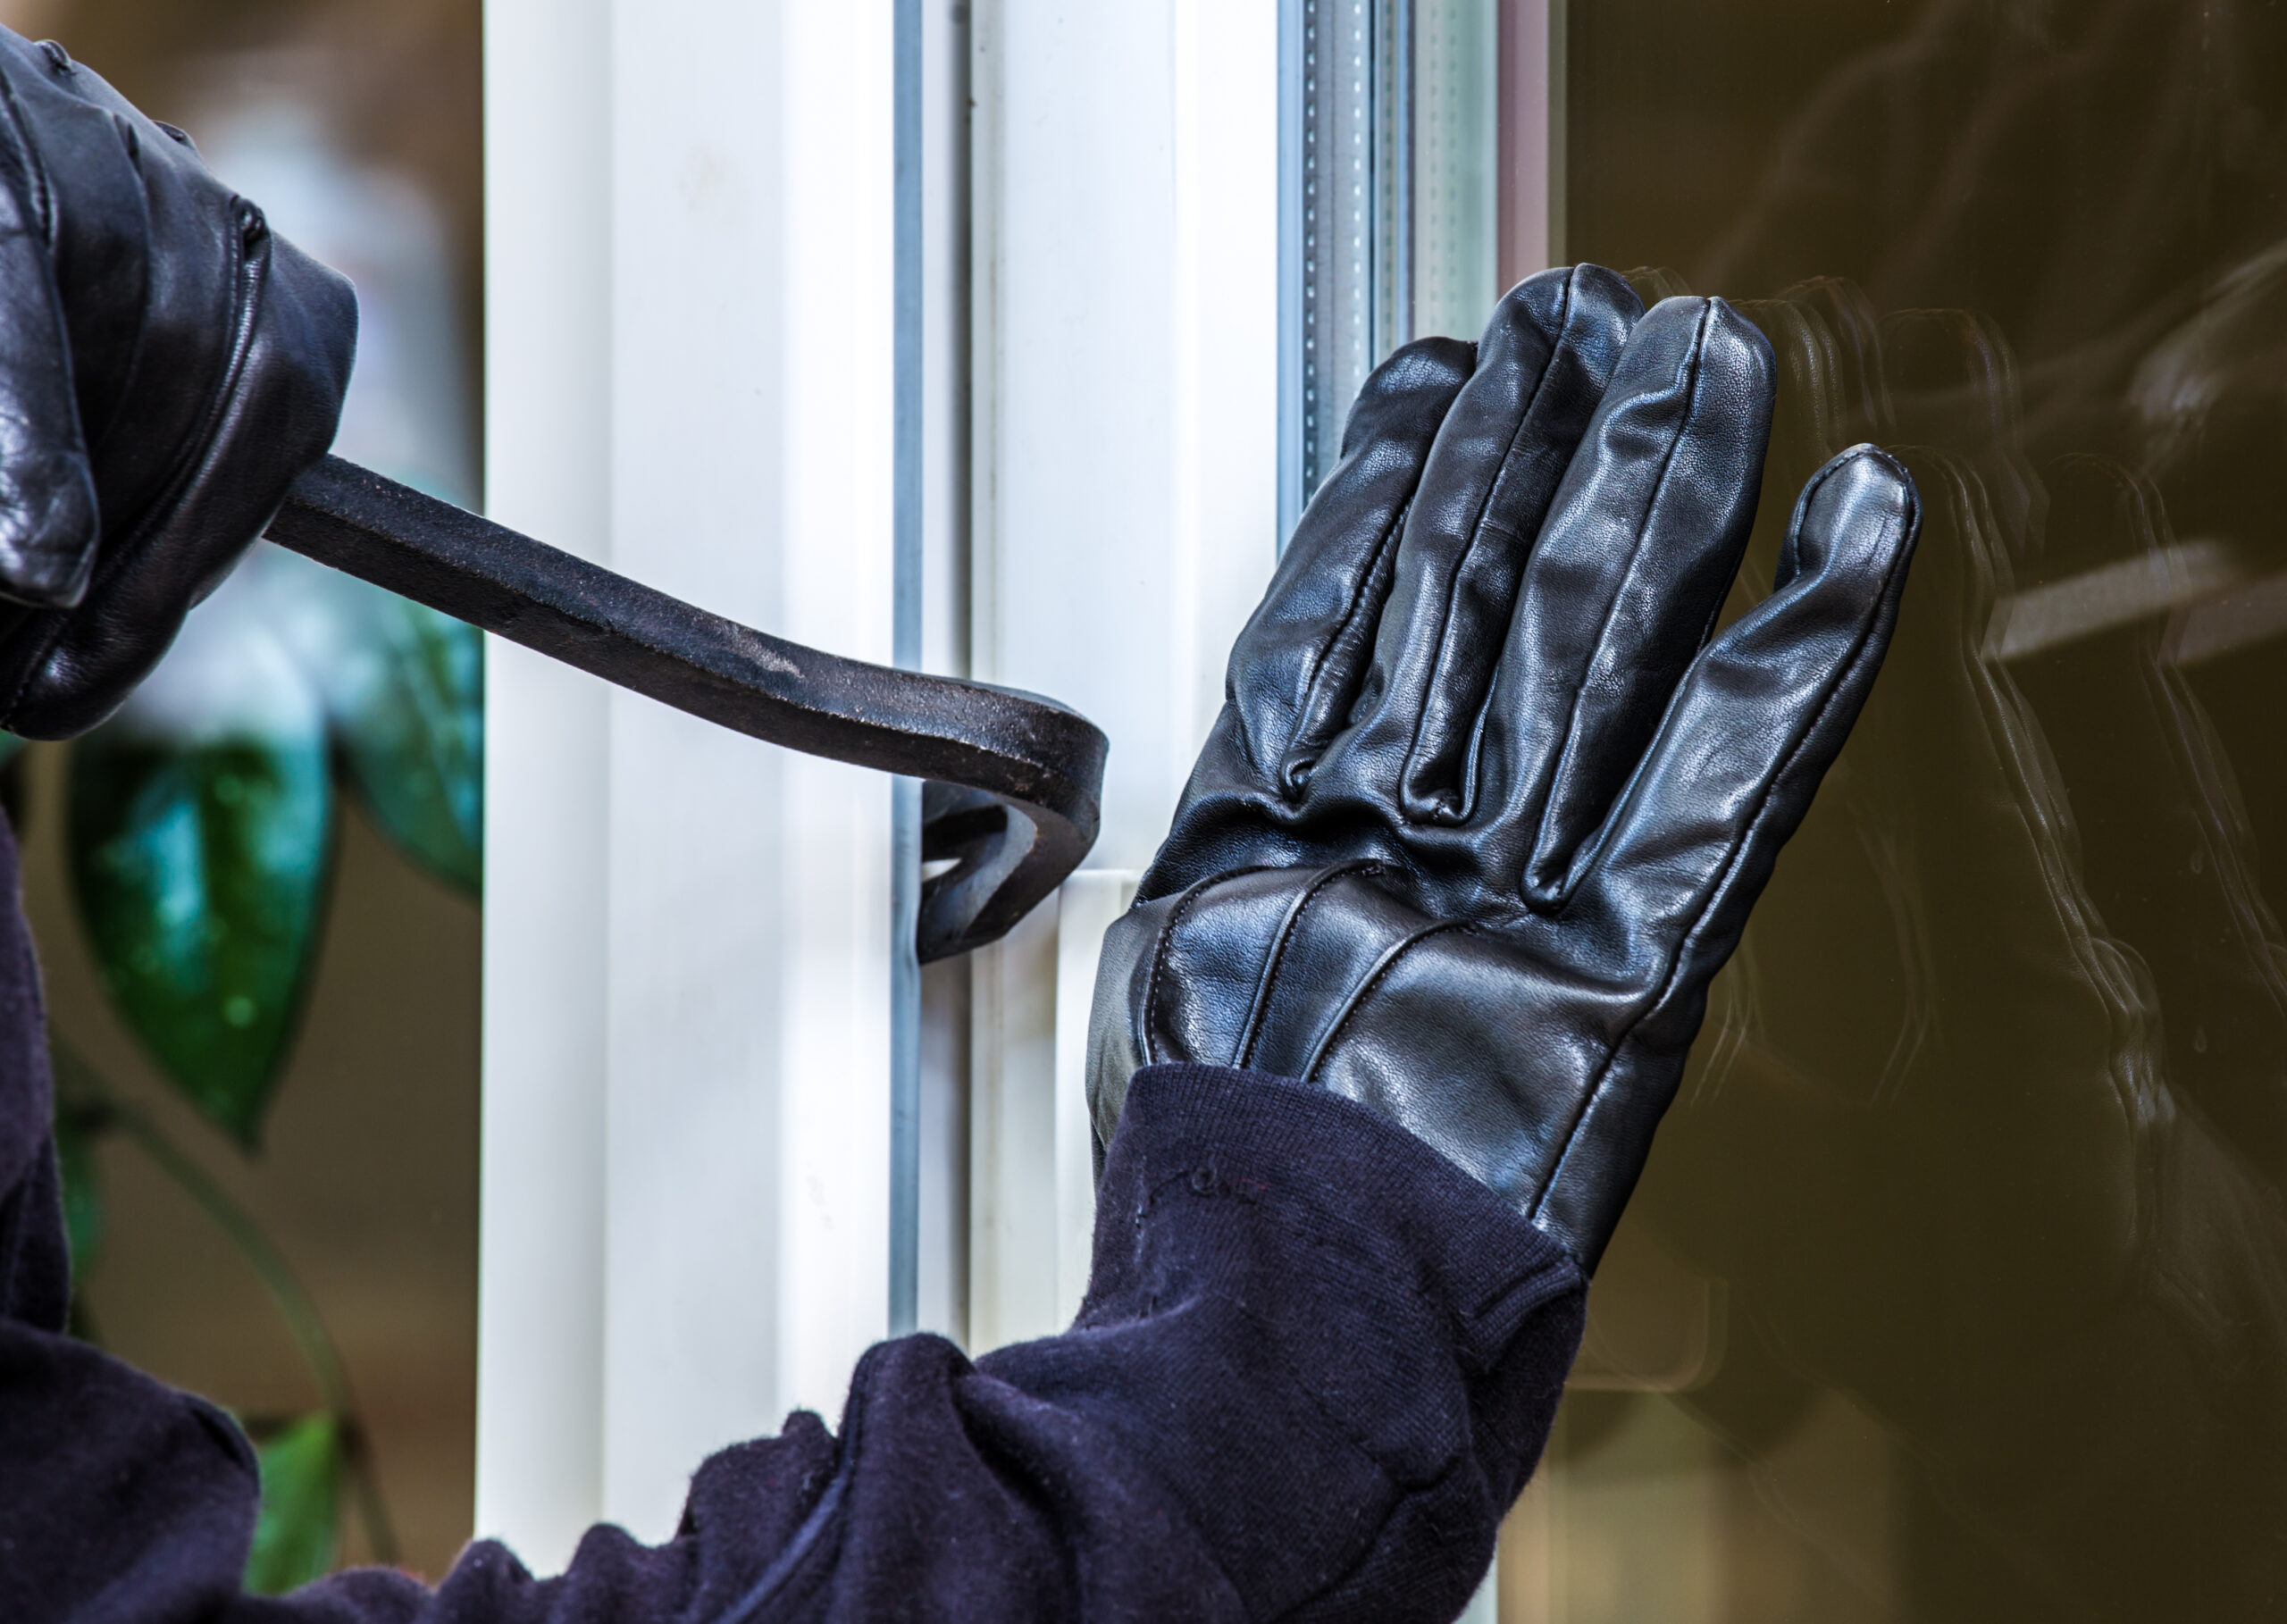 burglar attempting to pry open door